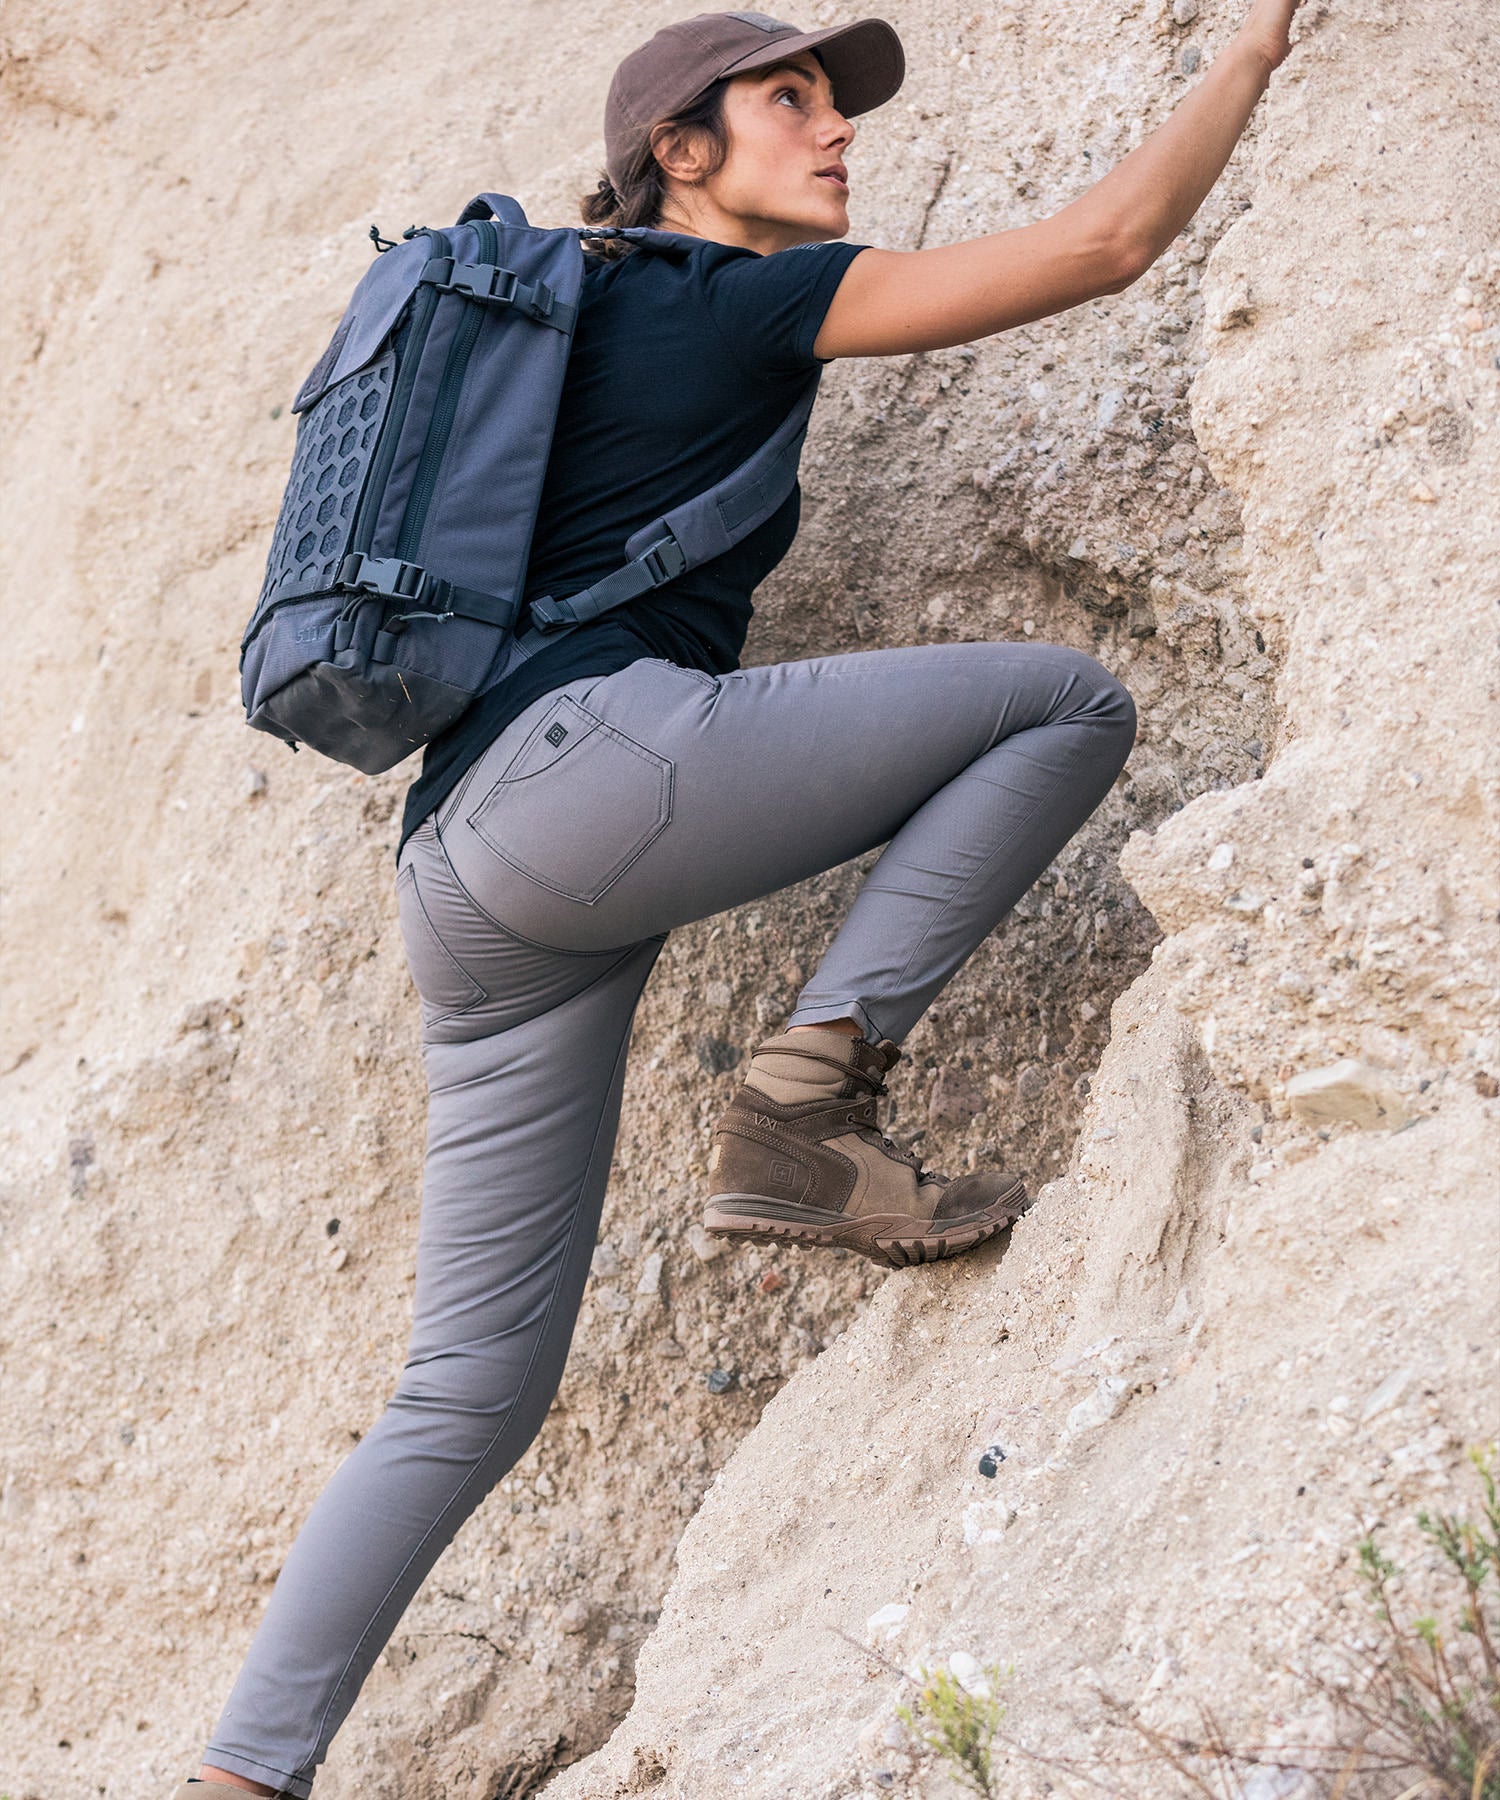 donna si arrampica su rocce con lo zaino amp12 tungsten di 5.11